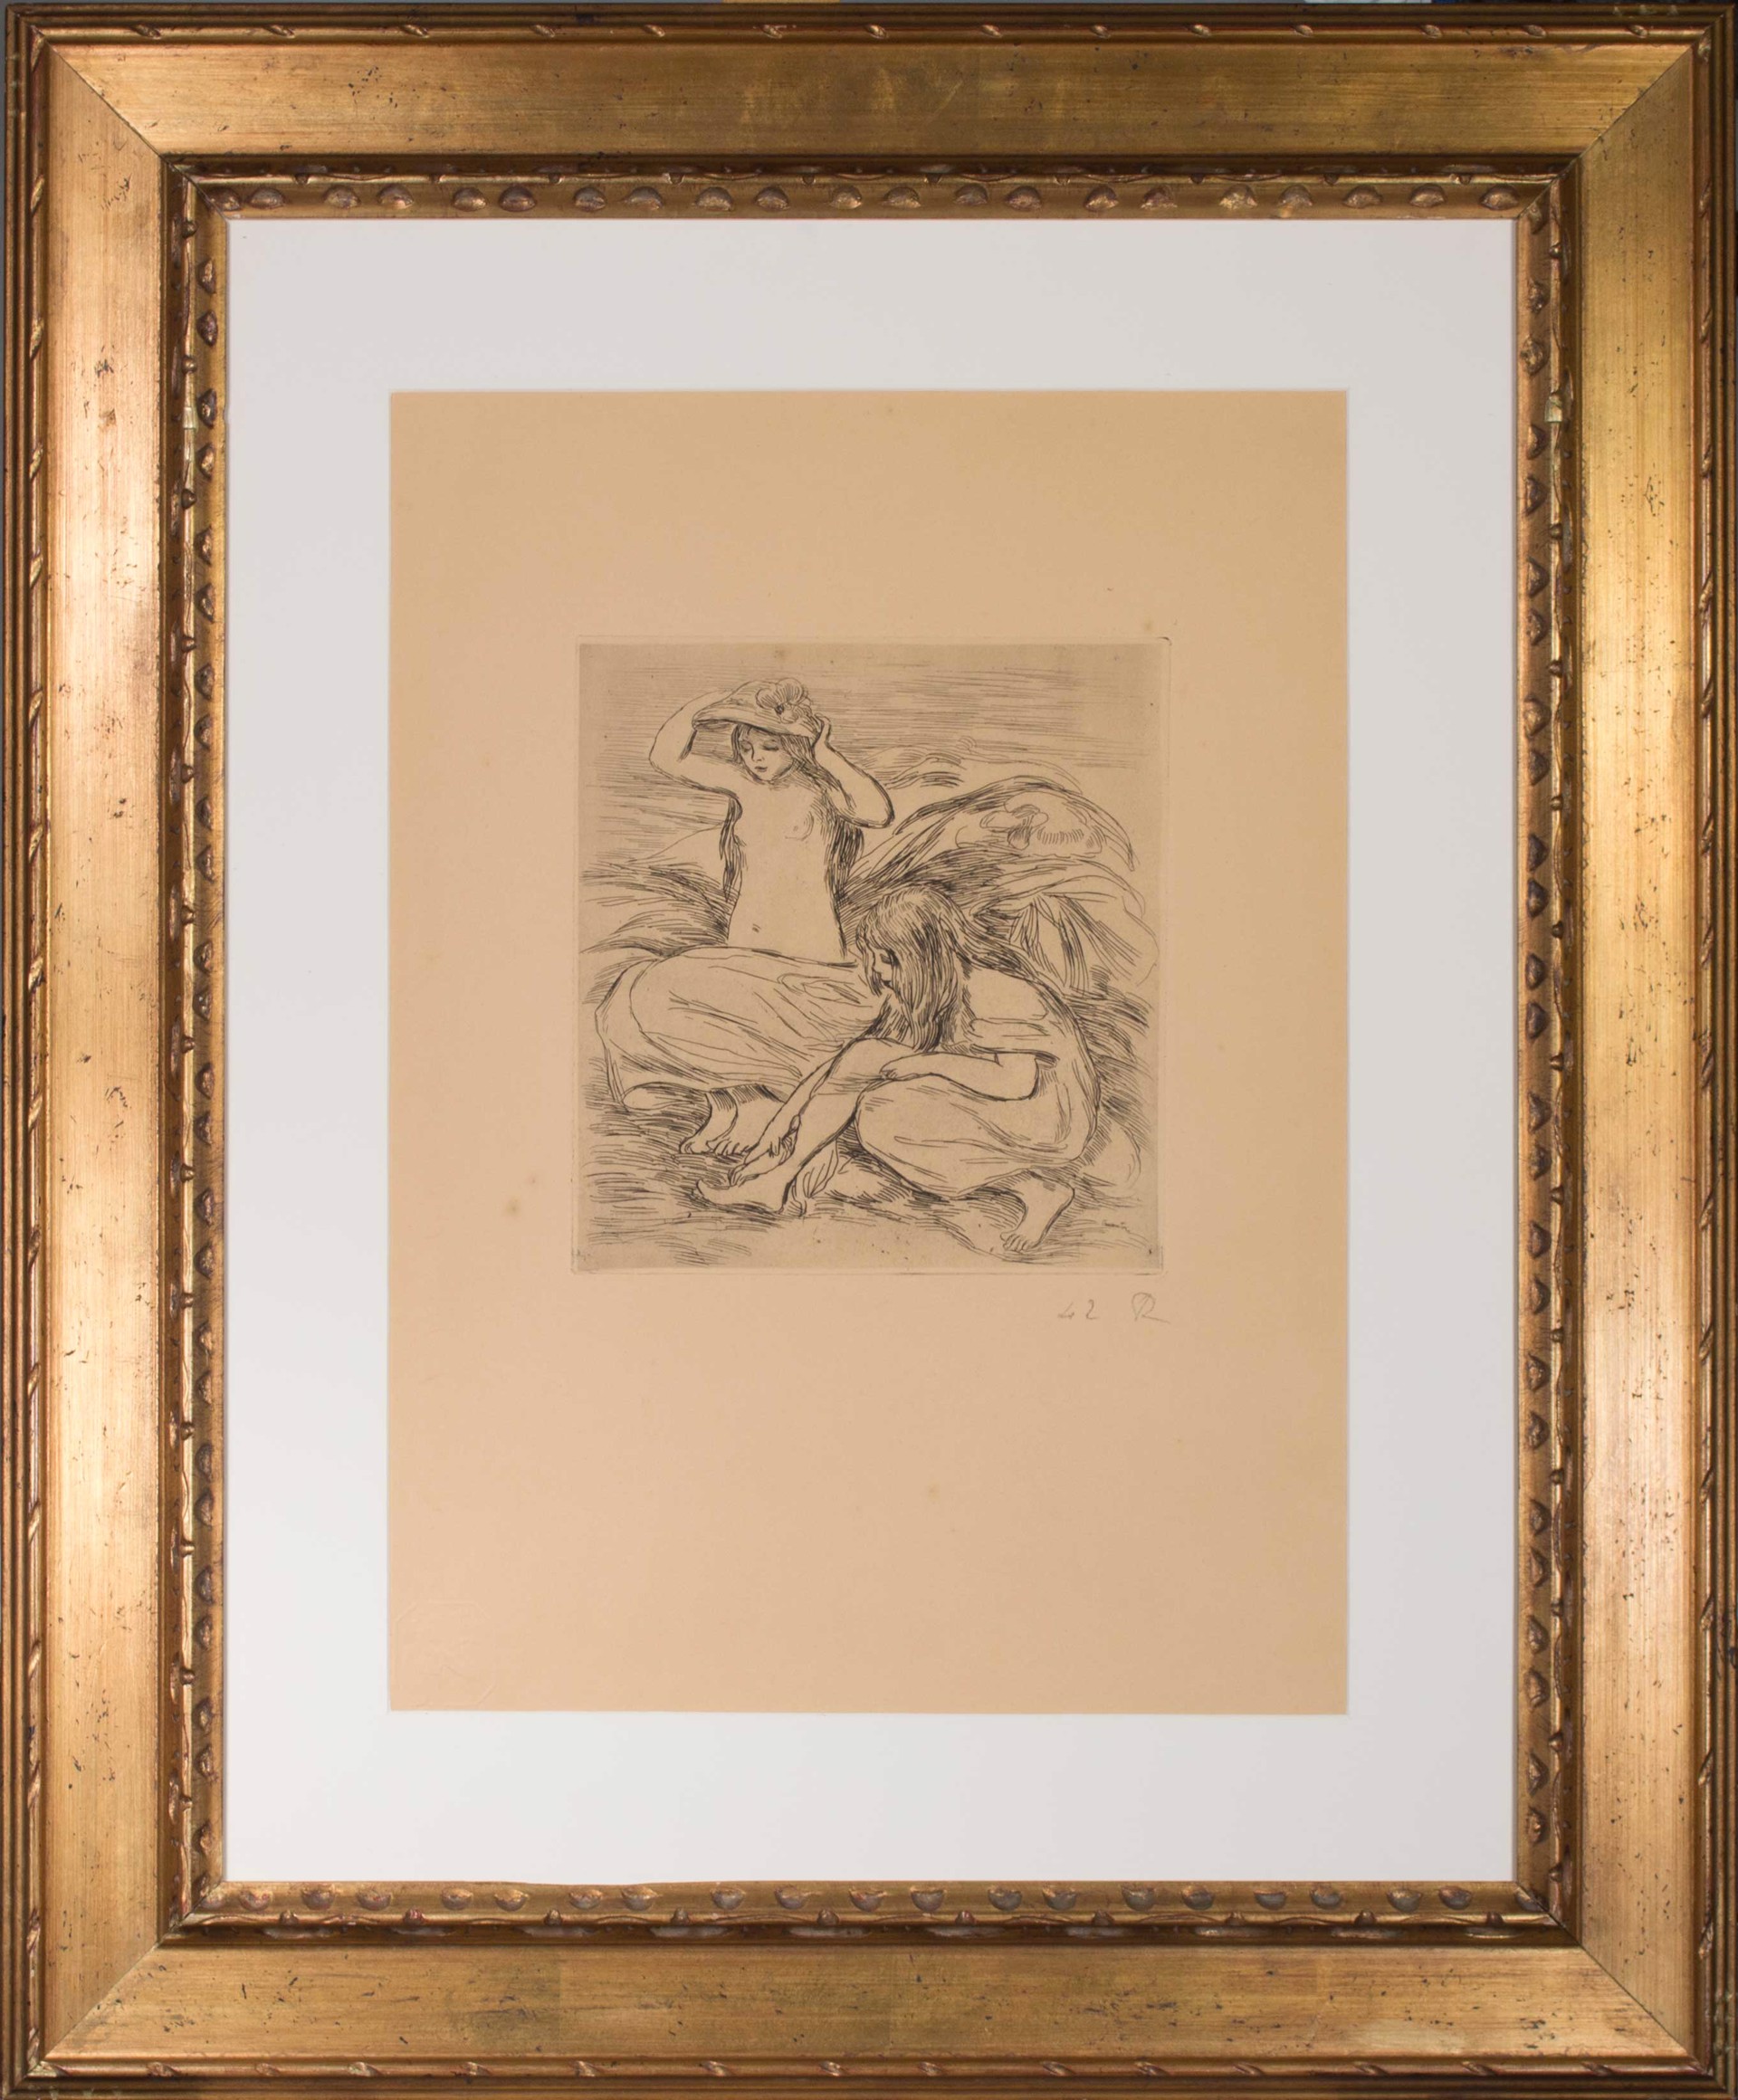 Les Deux Baigneuses (The Two Bathers) from L'Estampe Originale by Pierre-Auguste Renoir